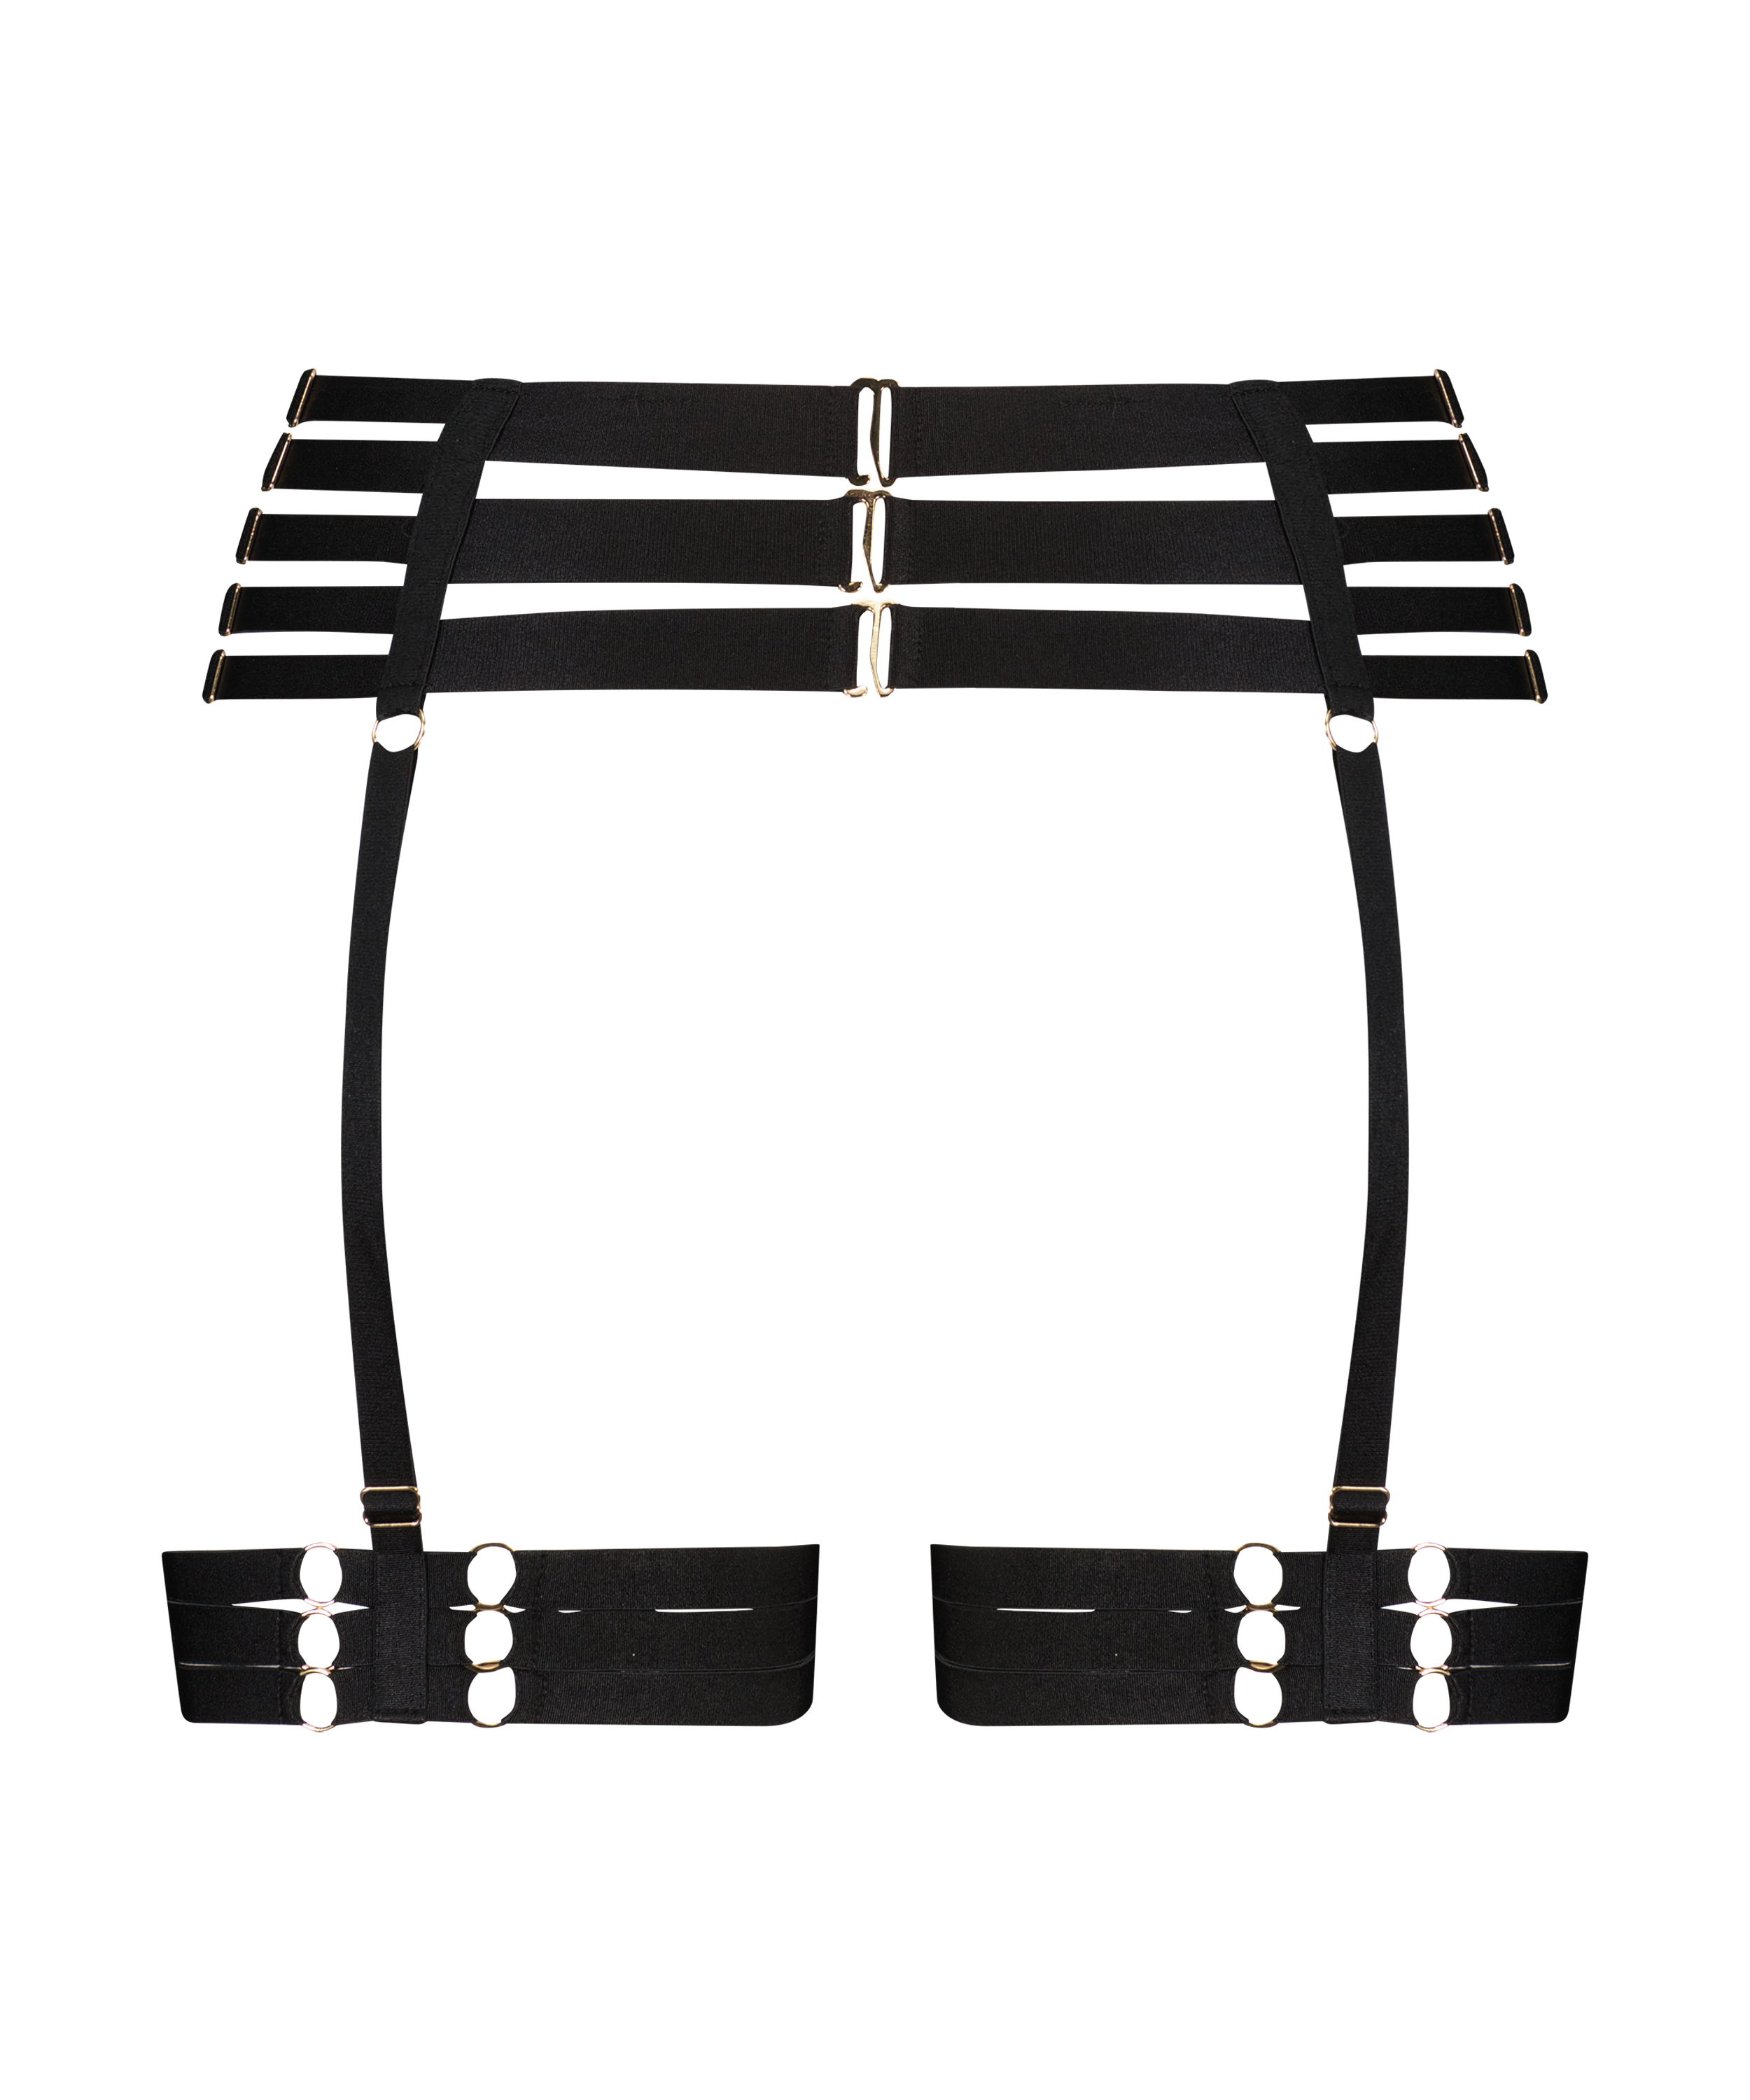 Private Suspender Belt, Black, main